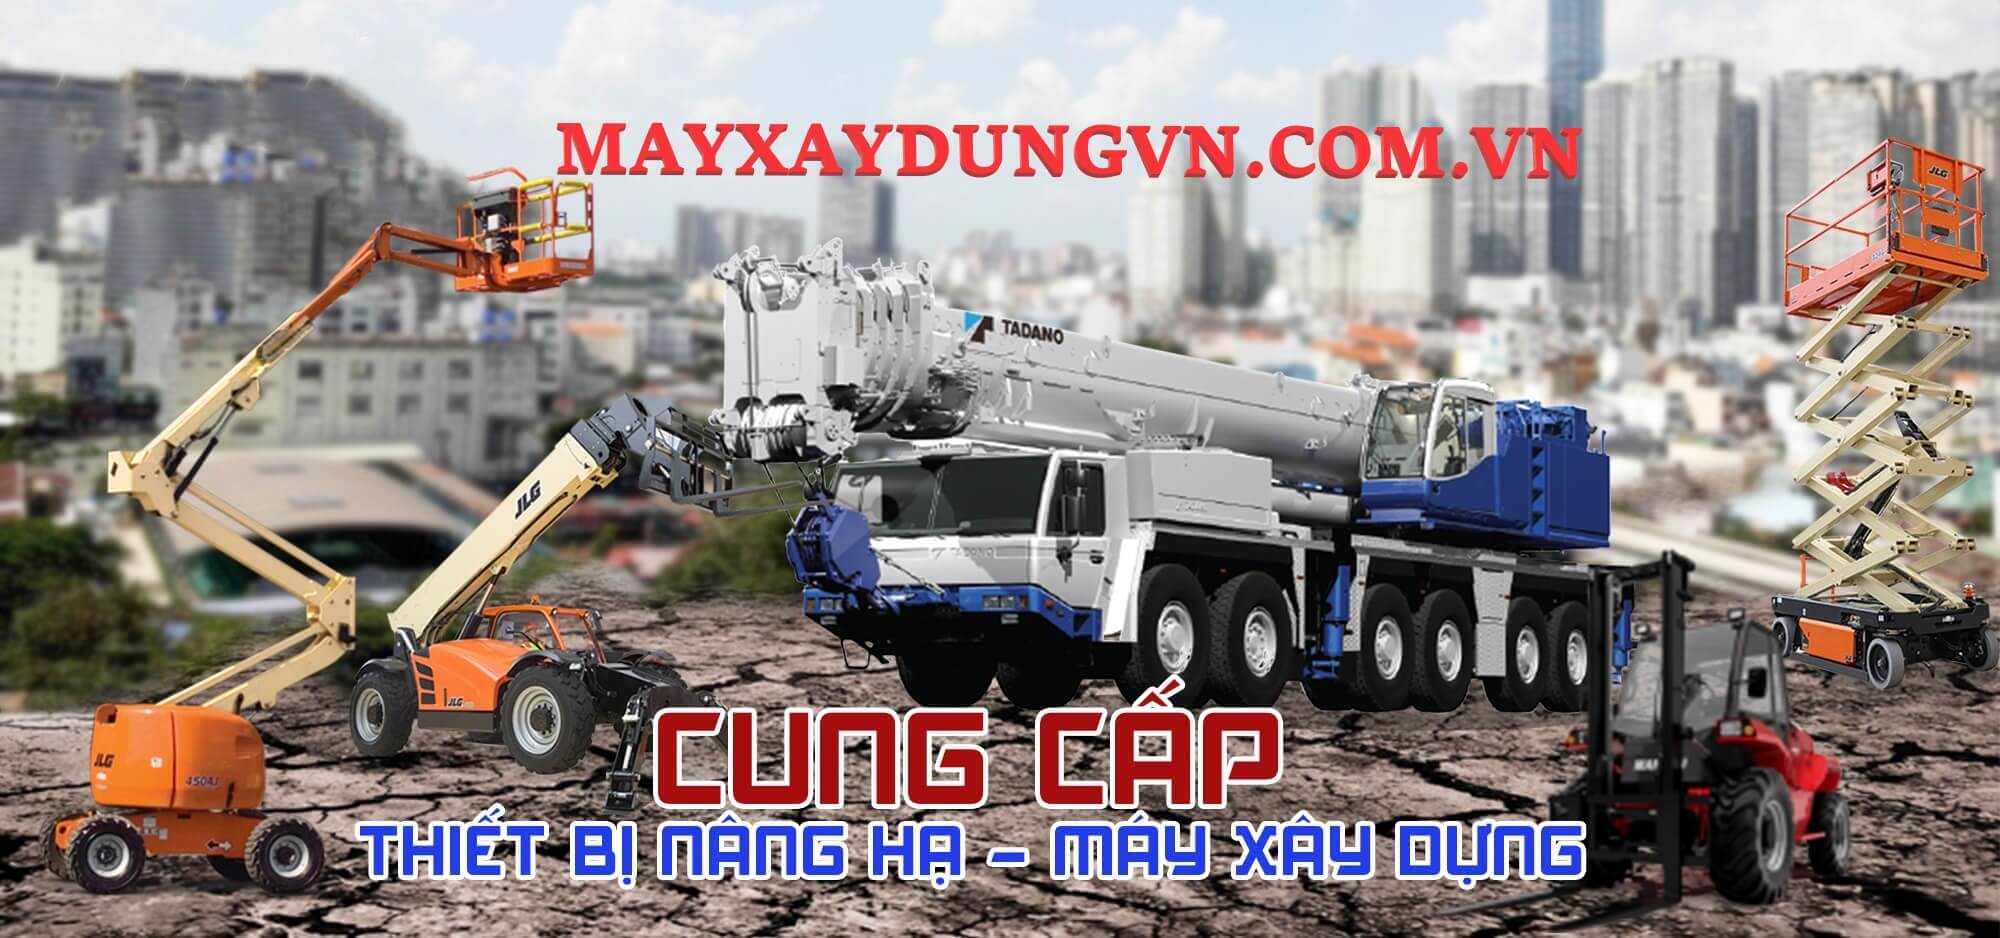 Máy xây dựng Việt Nam